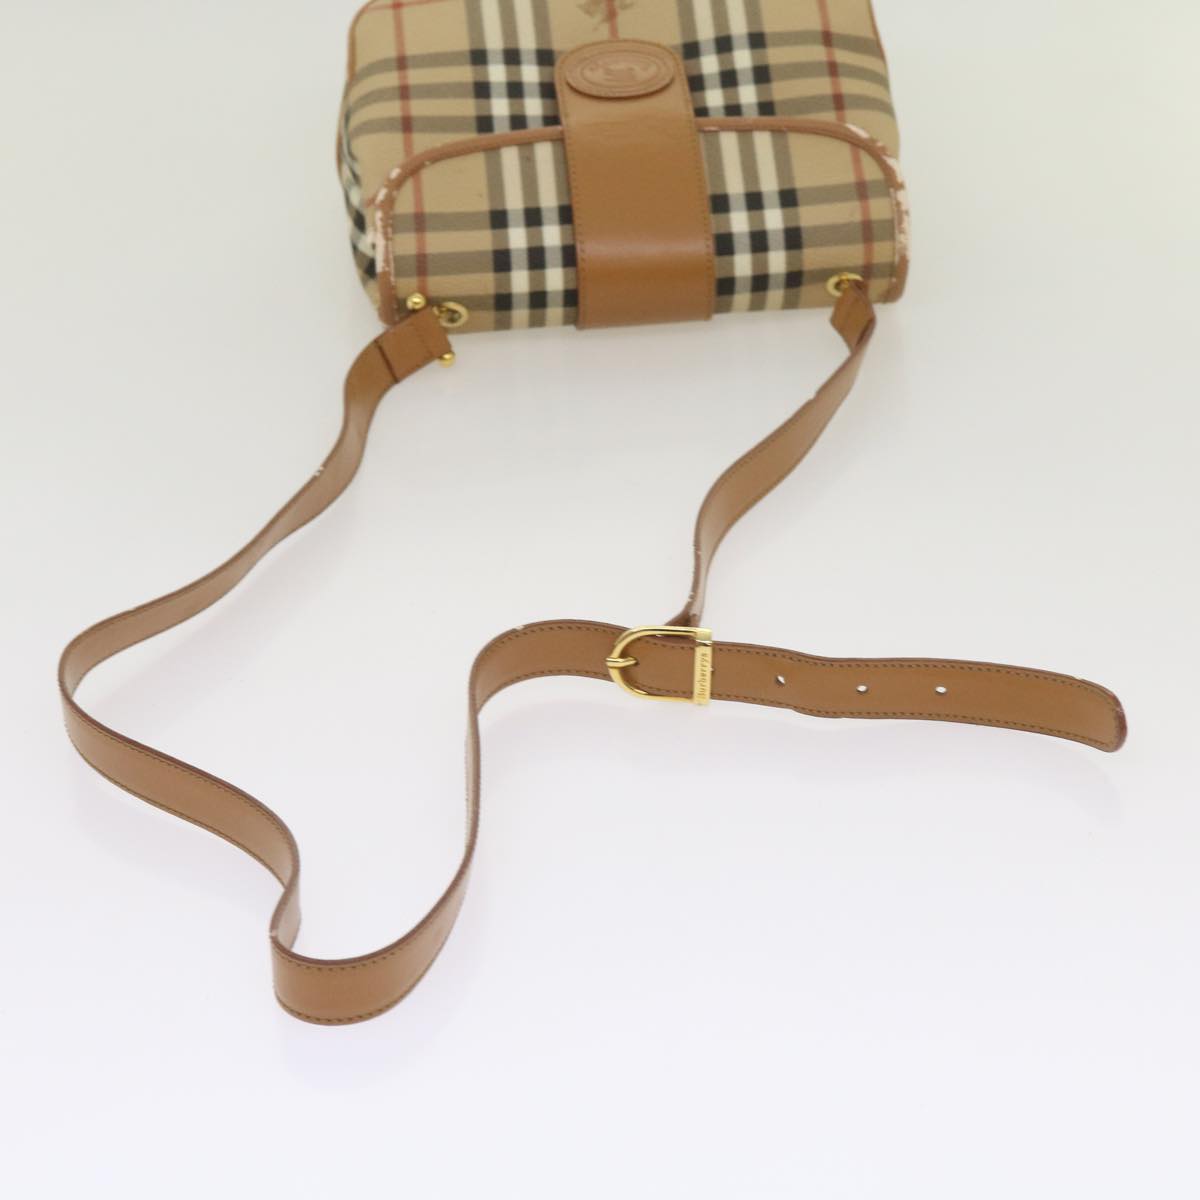 Burberrys Nova Check Shoulder Bag PVC Leather Beige Auth ep3552